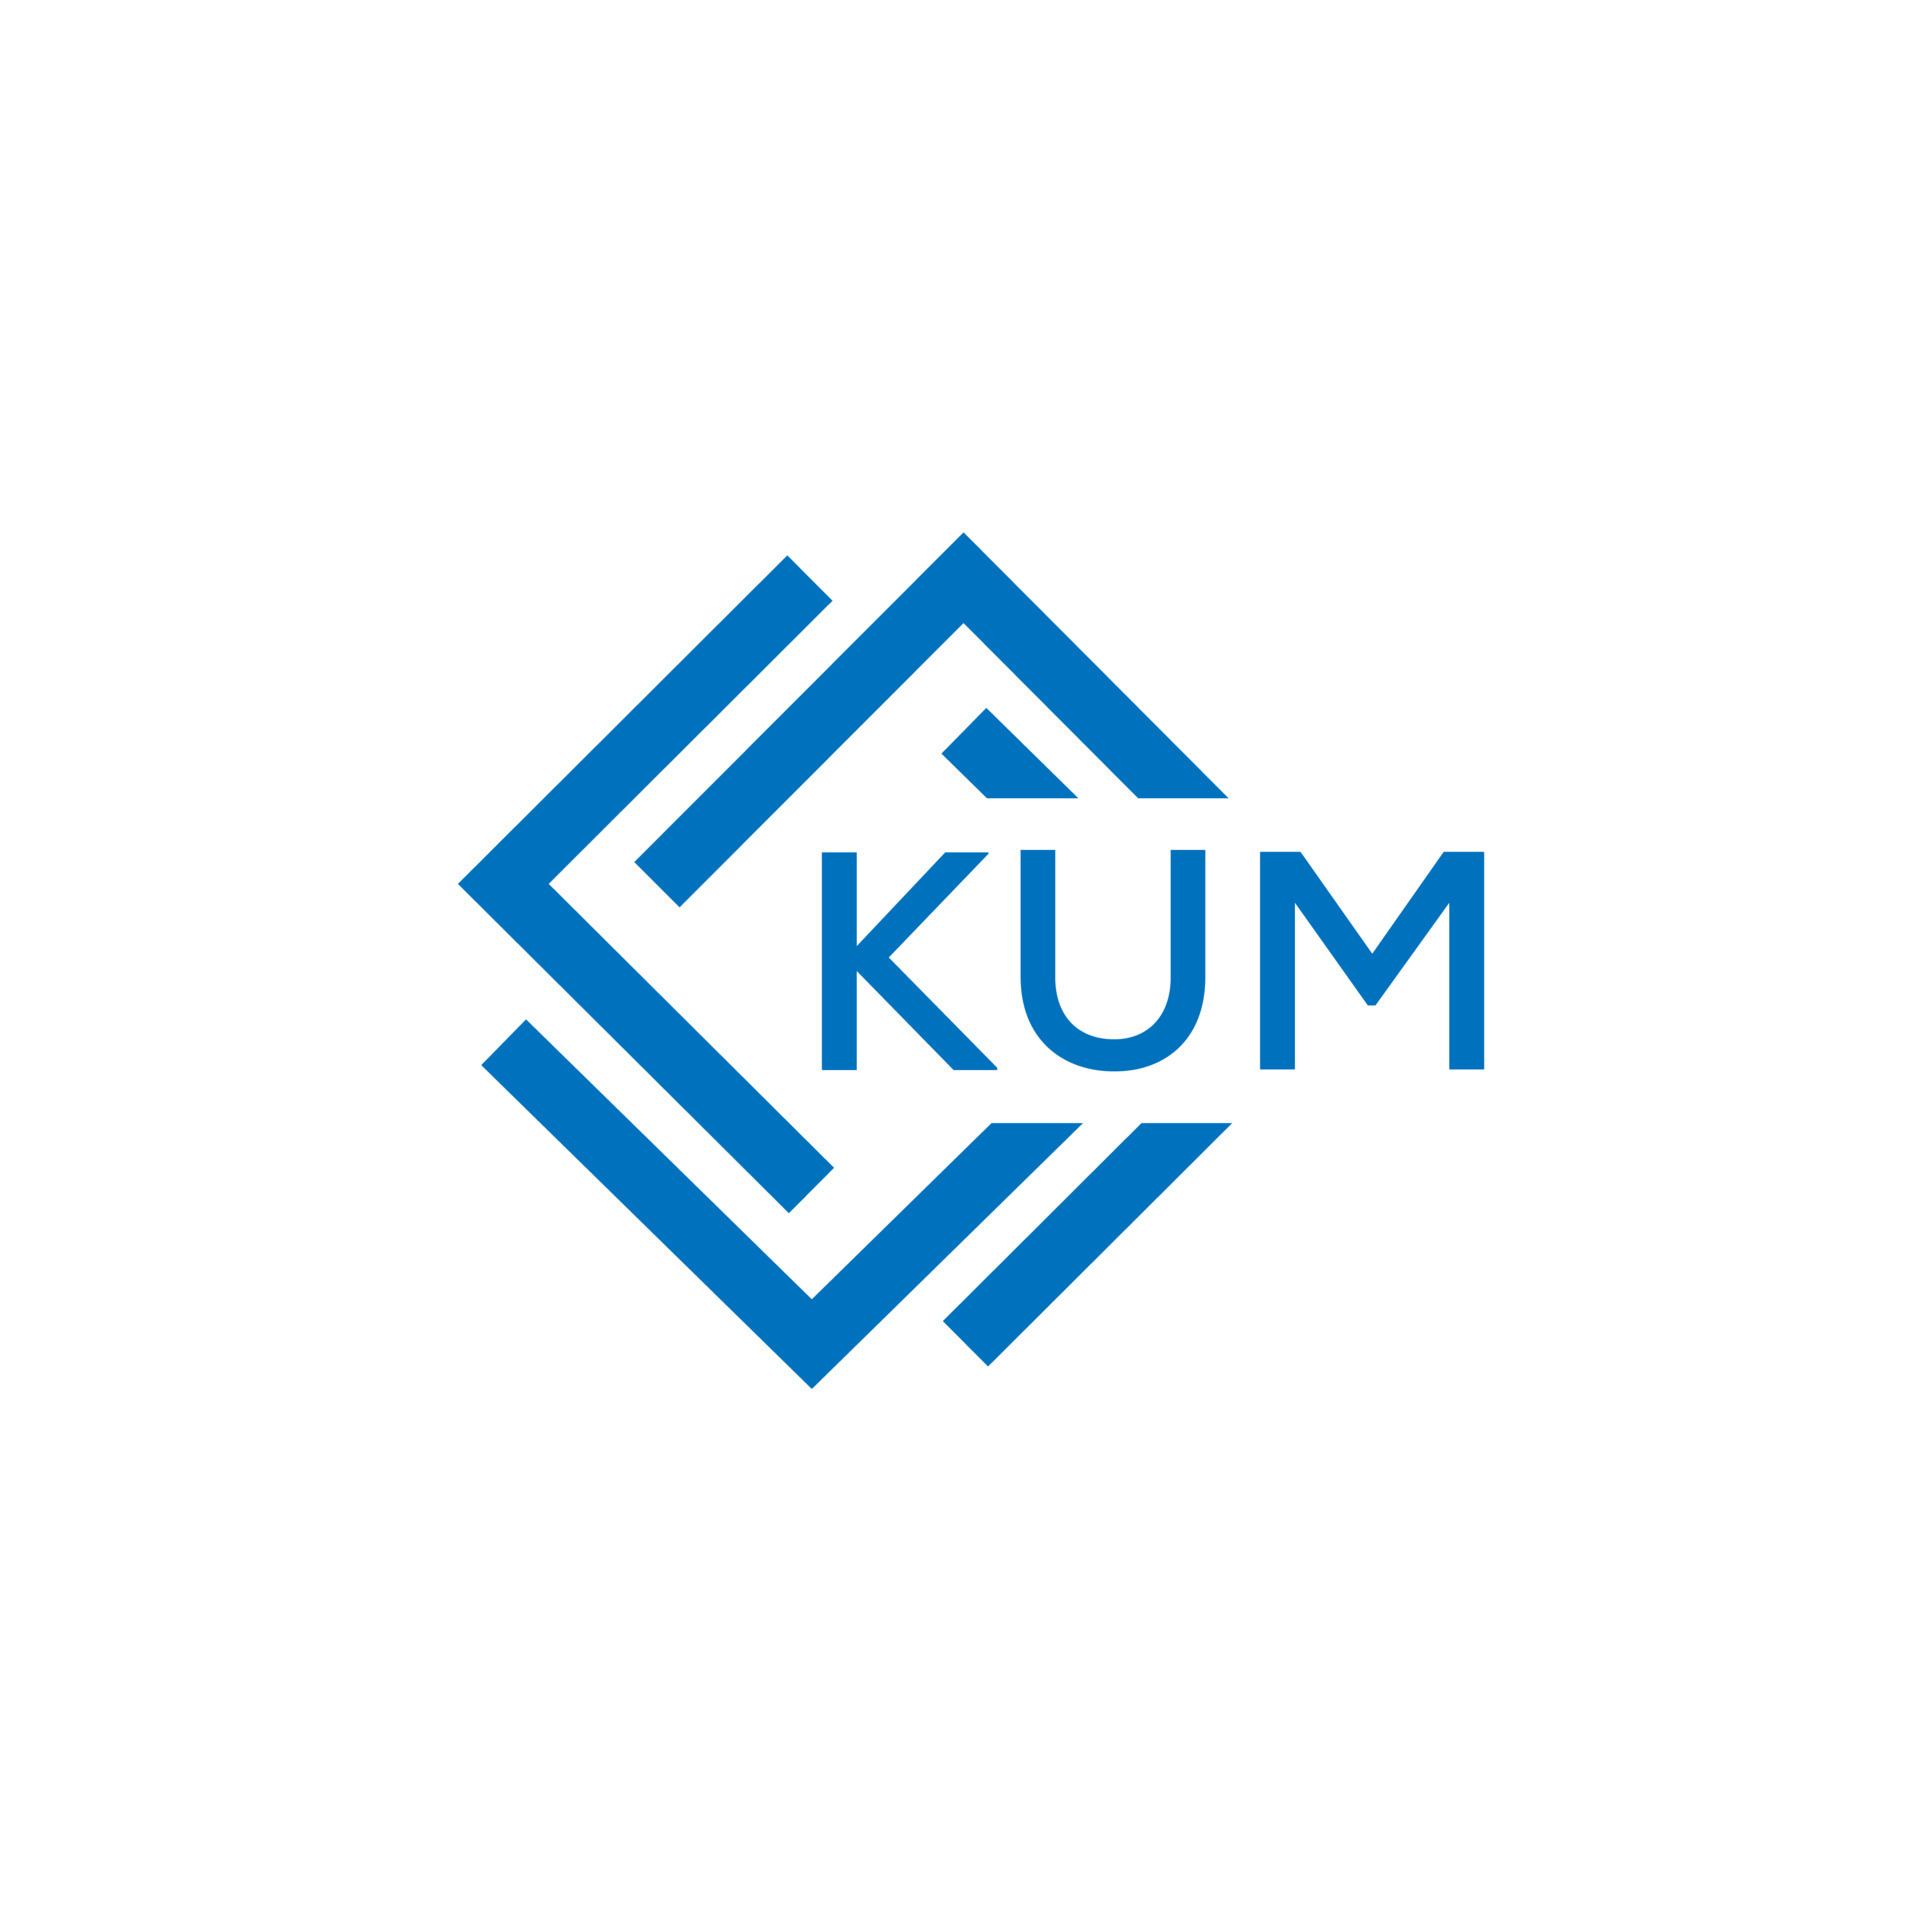 KUM letter logo design on white background. KUM creative circle letter ...